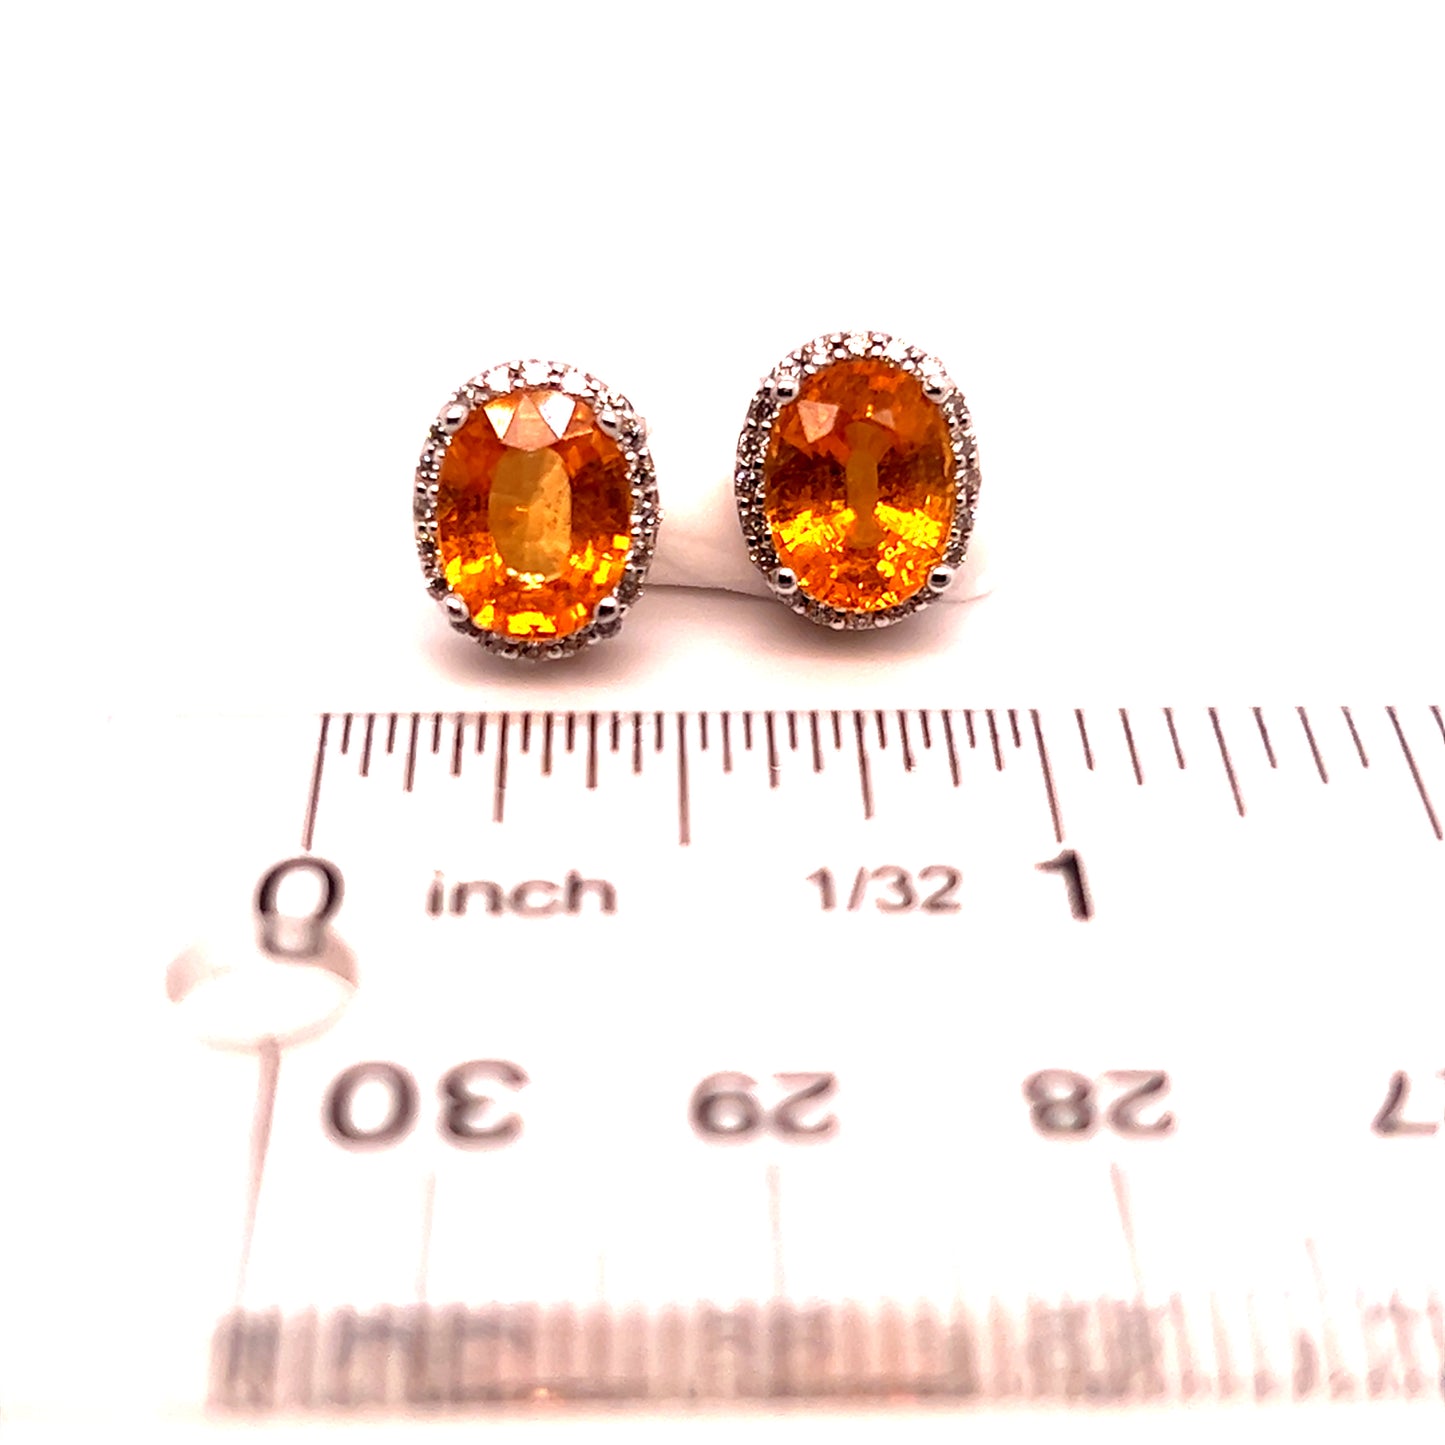 Natural Sapphire Diamond Stud Earrings 14k W Gold 4.98 TCW Certified $4,950 121266 - Certified Fine Jewelry